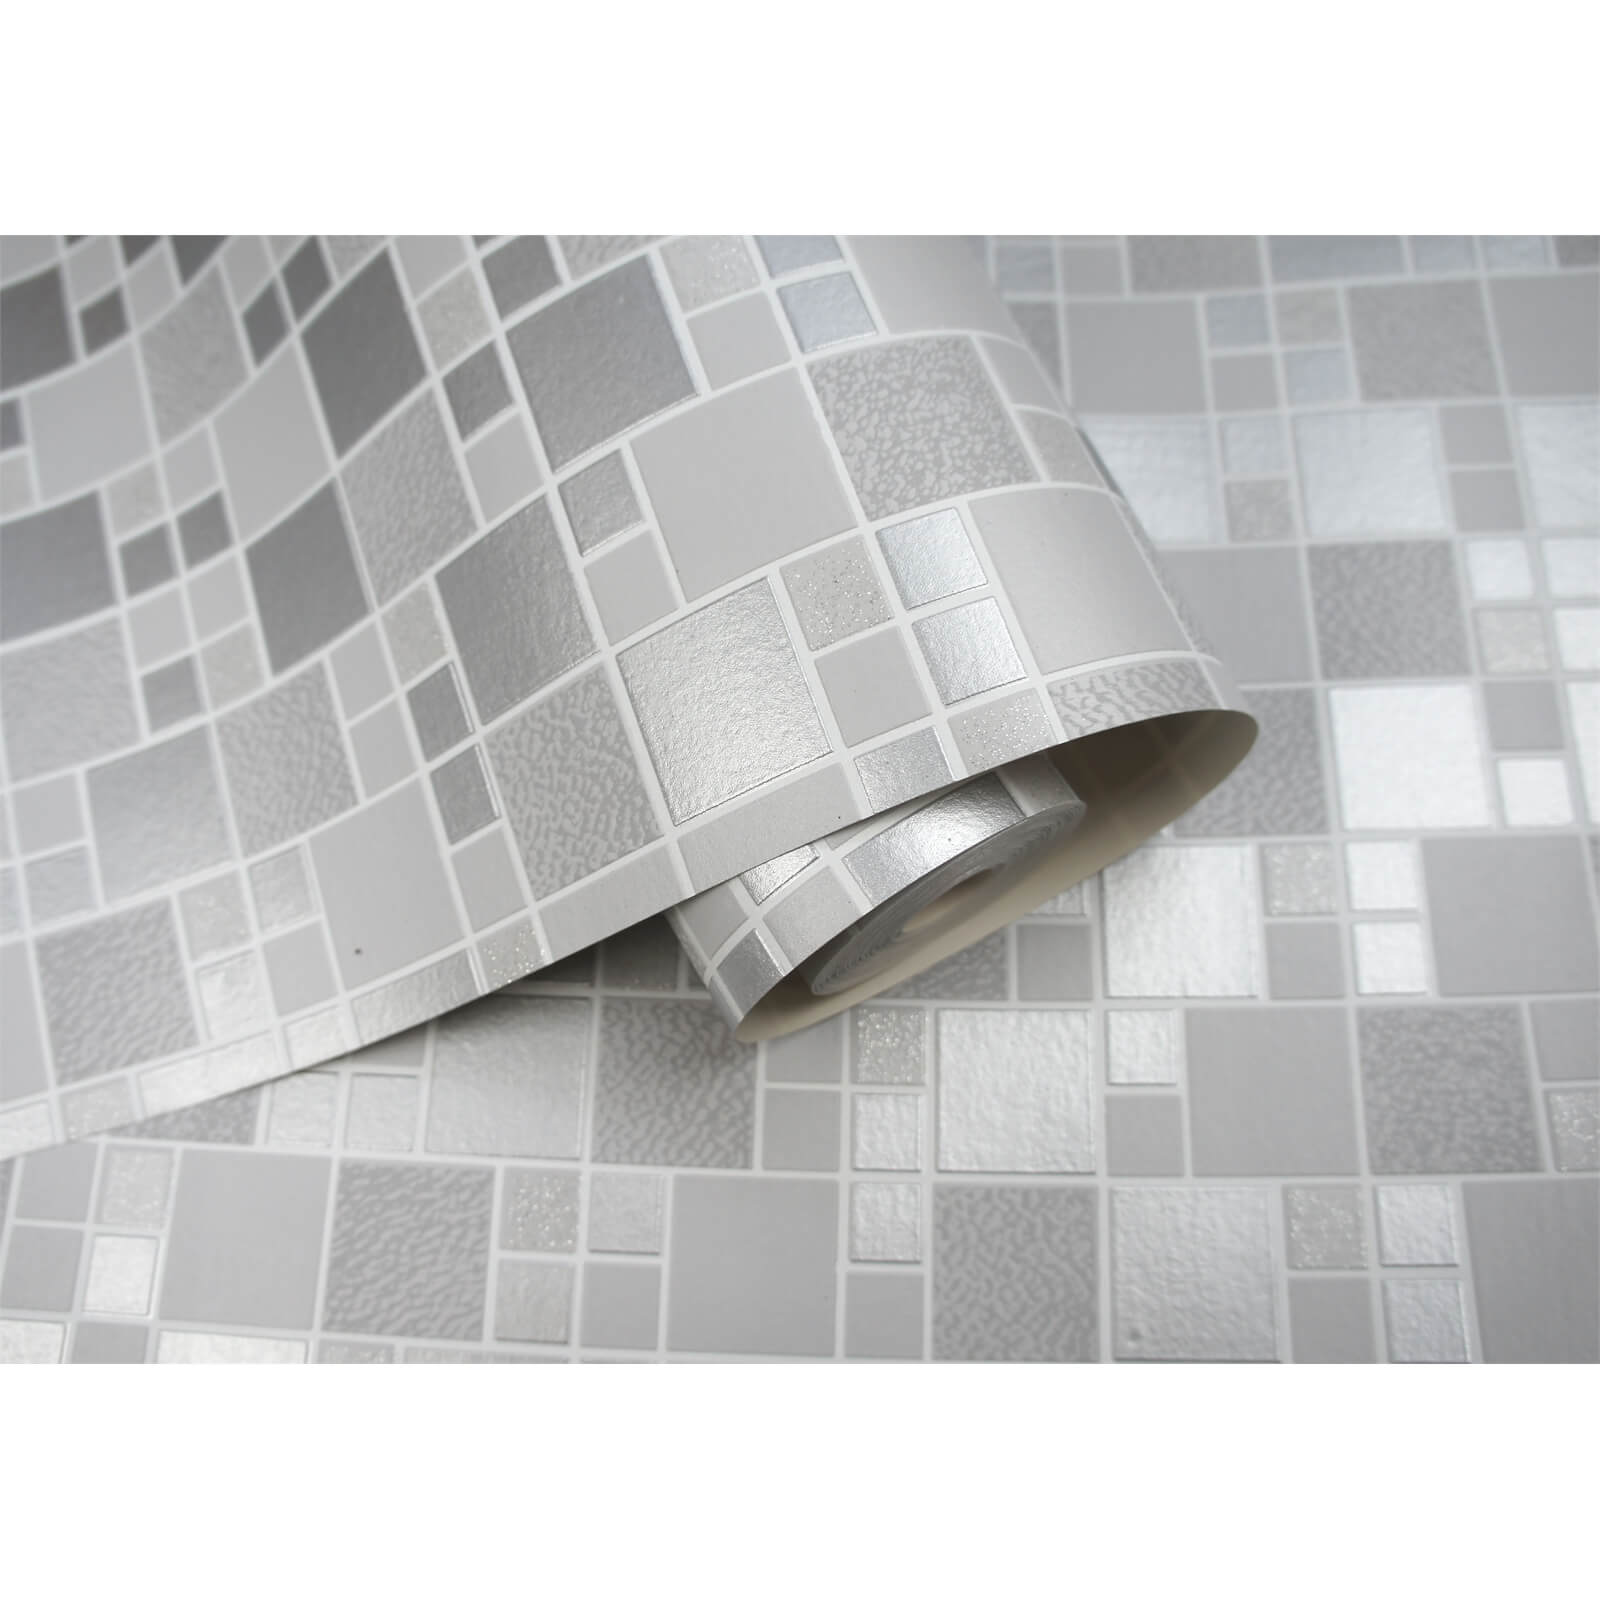 Holden Decor Trivola Tile Embossed Metallic Glitter Grey Wallpaper